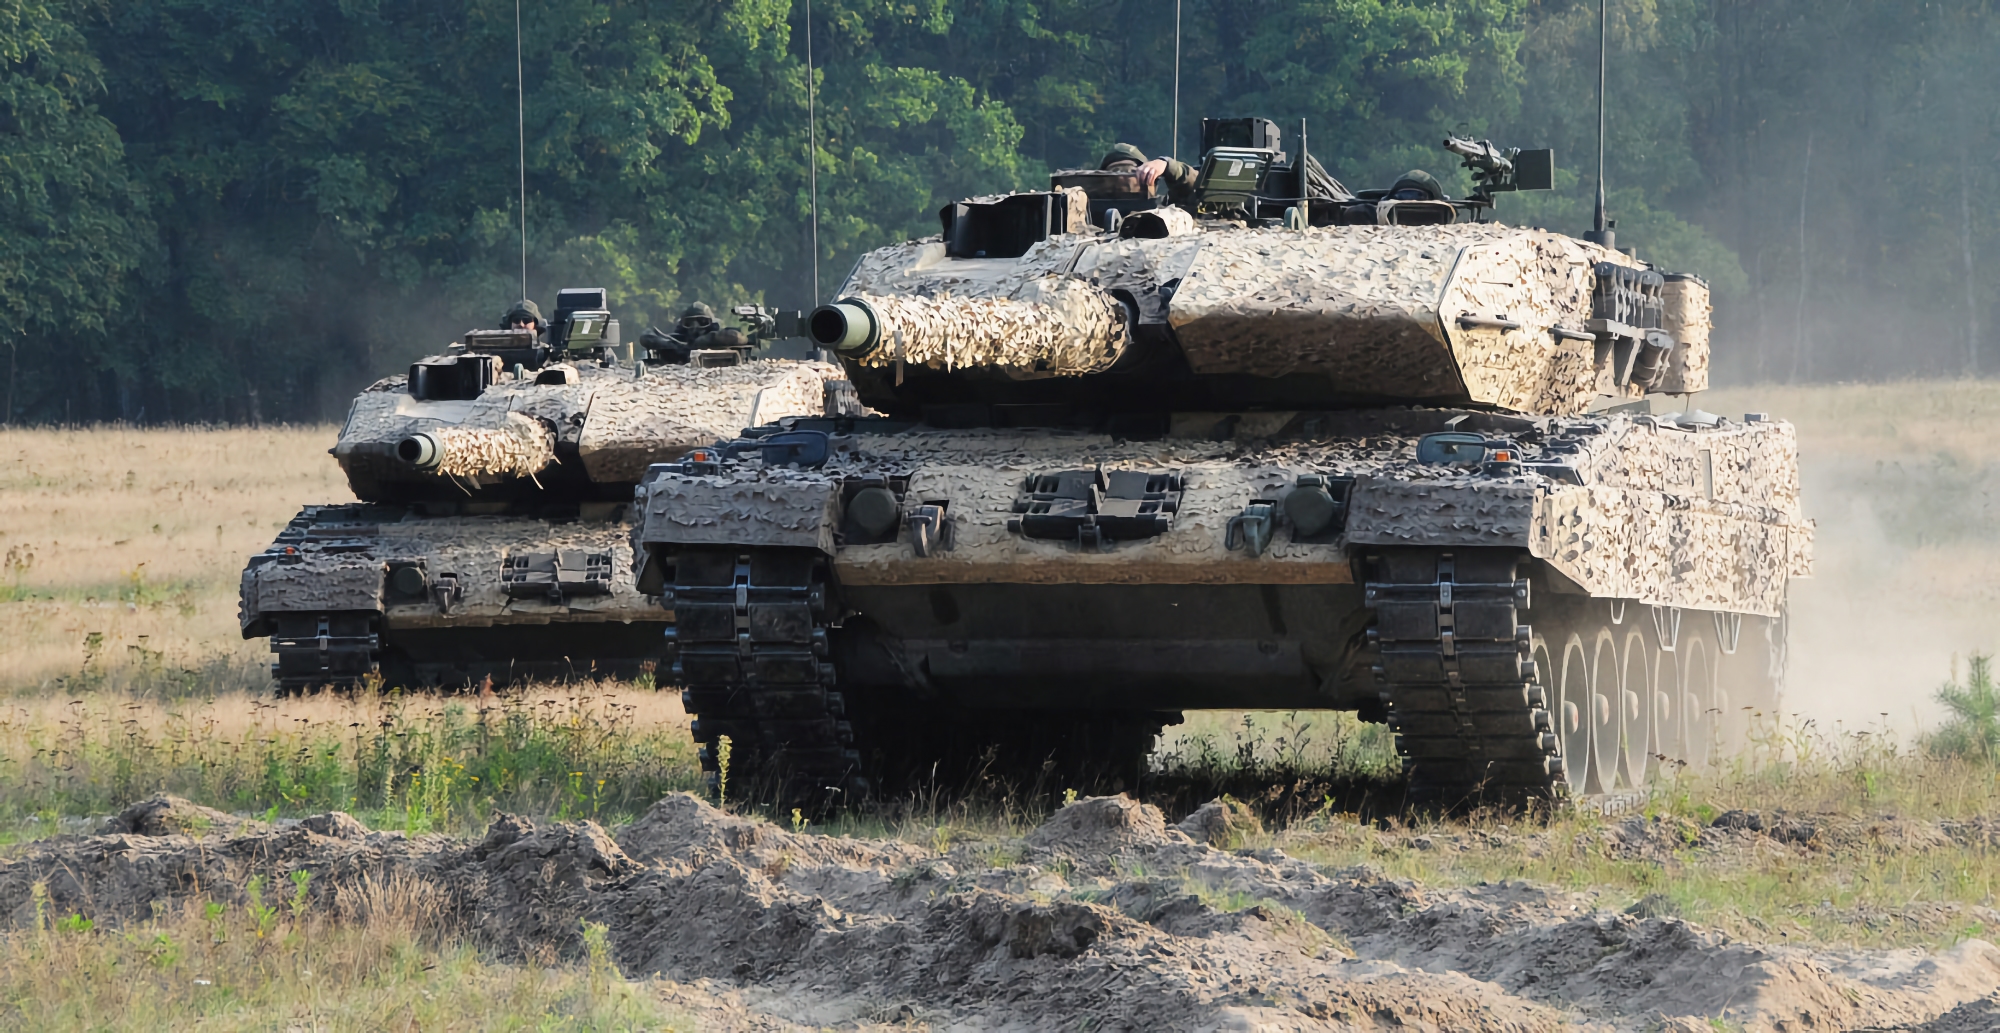 Польща передала ЗСУ другу партію танків Leopard 2А4, тепер їх на озброєнні України 14 одиниць